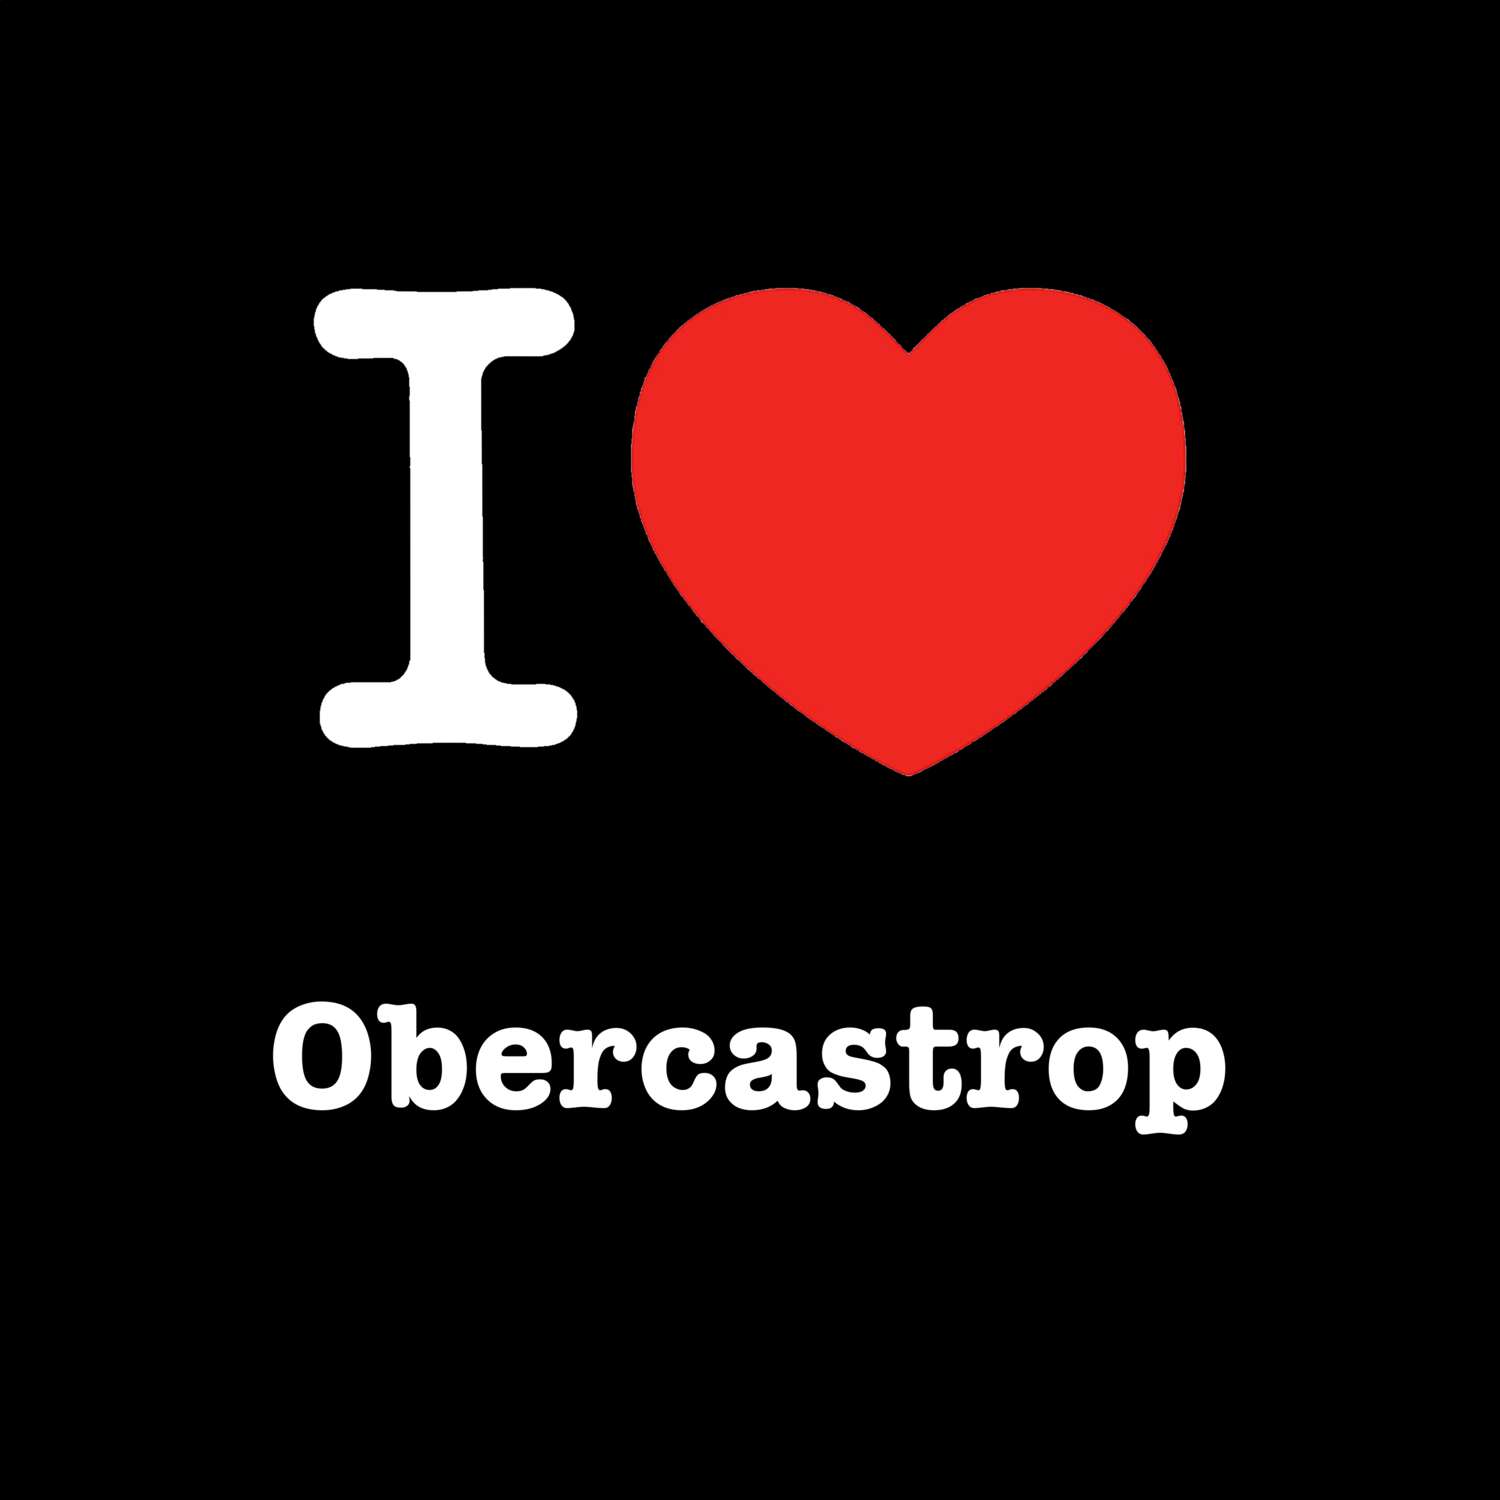 Obercastrop T-Shirt »I love«